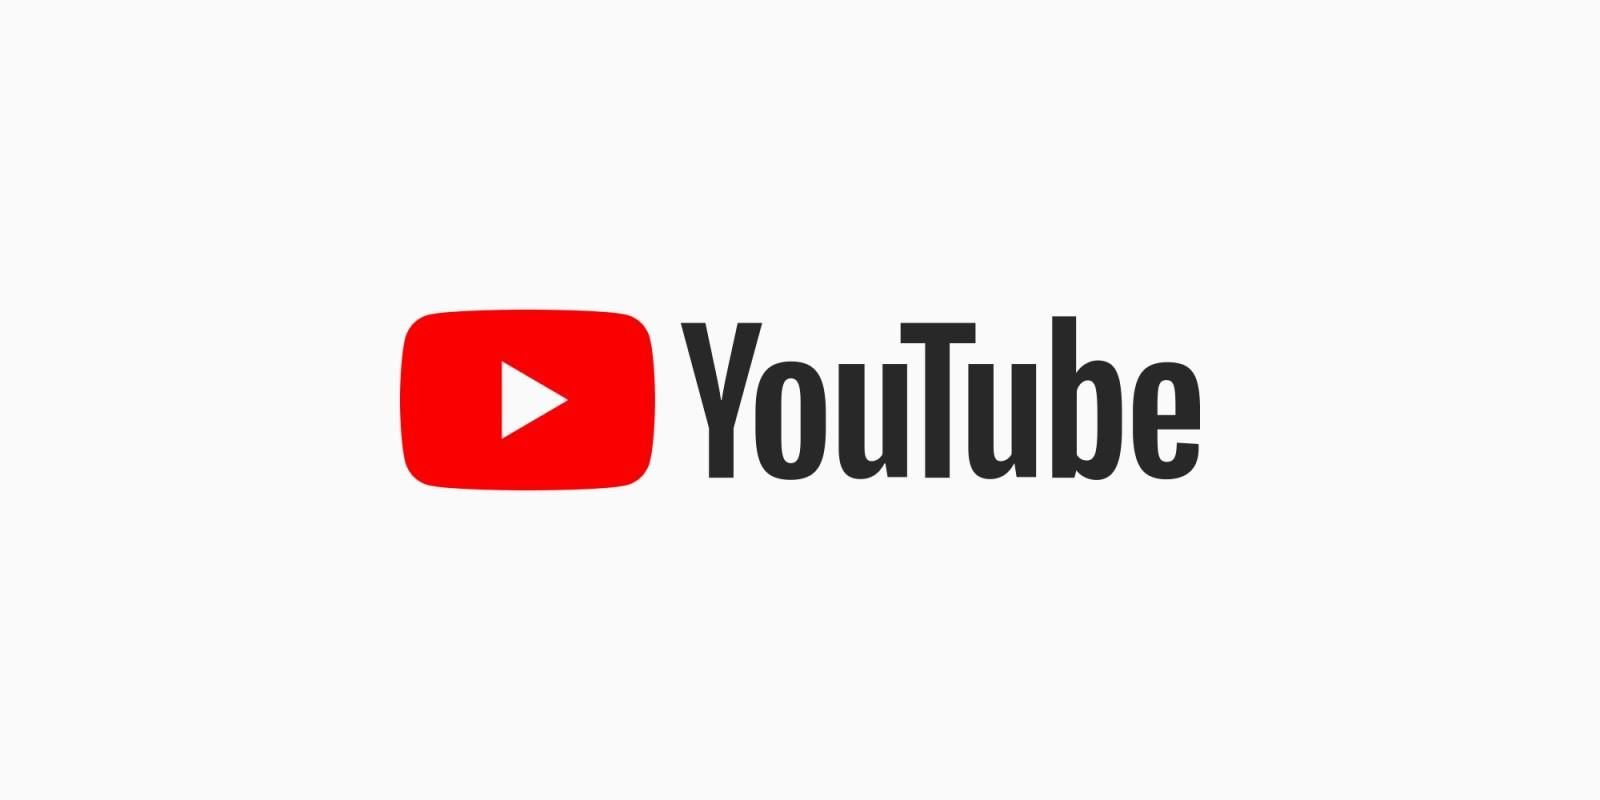 Контент в YouTube под угрозой: в ЕС готовят поправки в законодательство